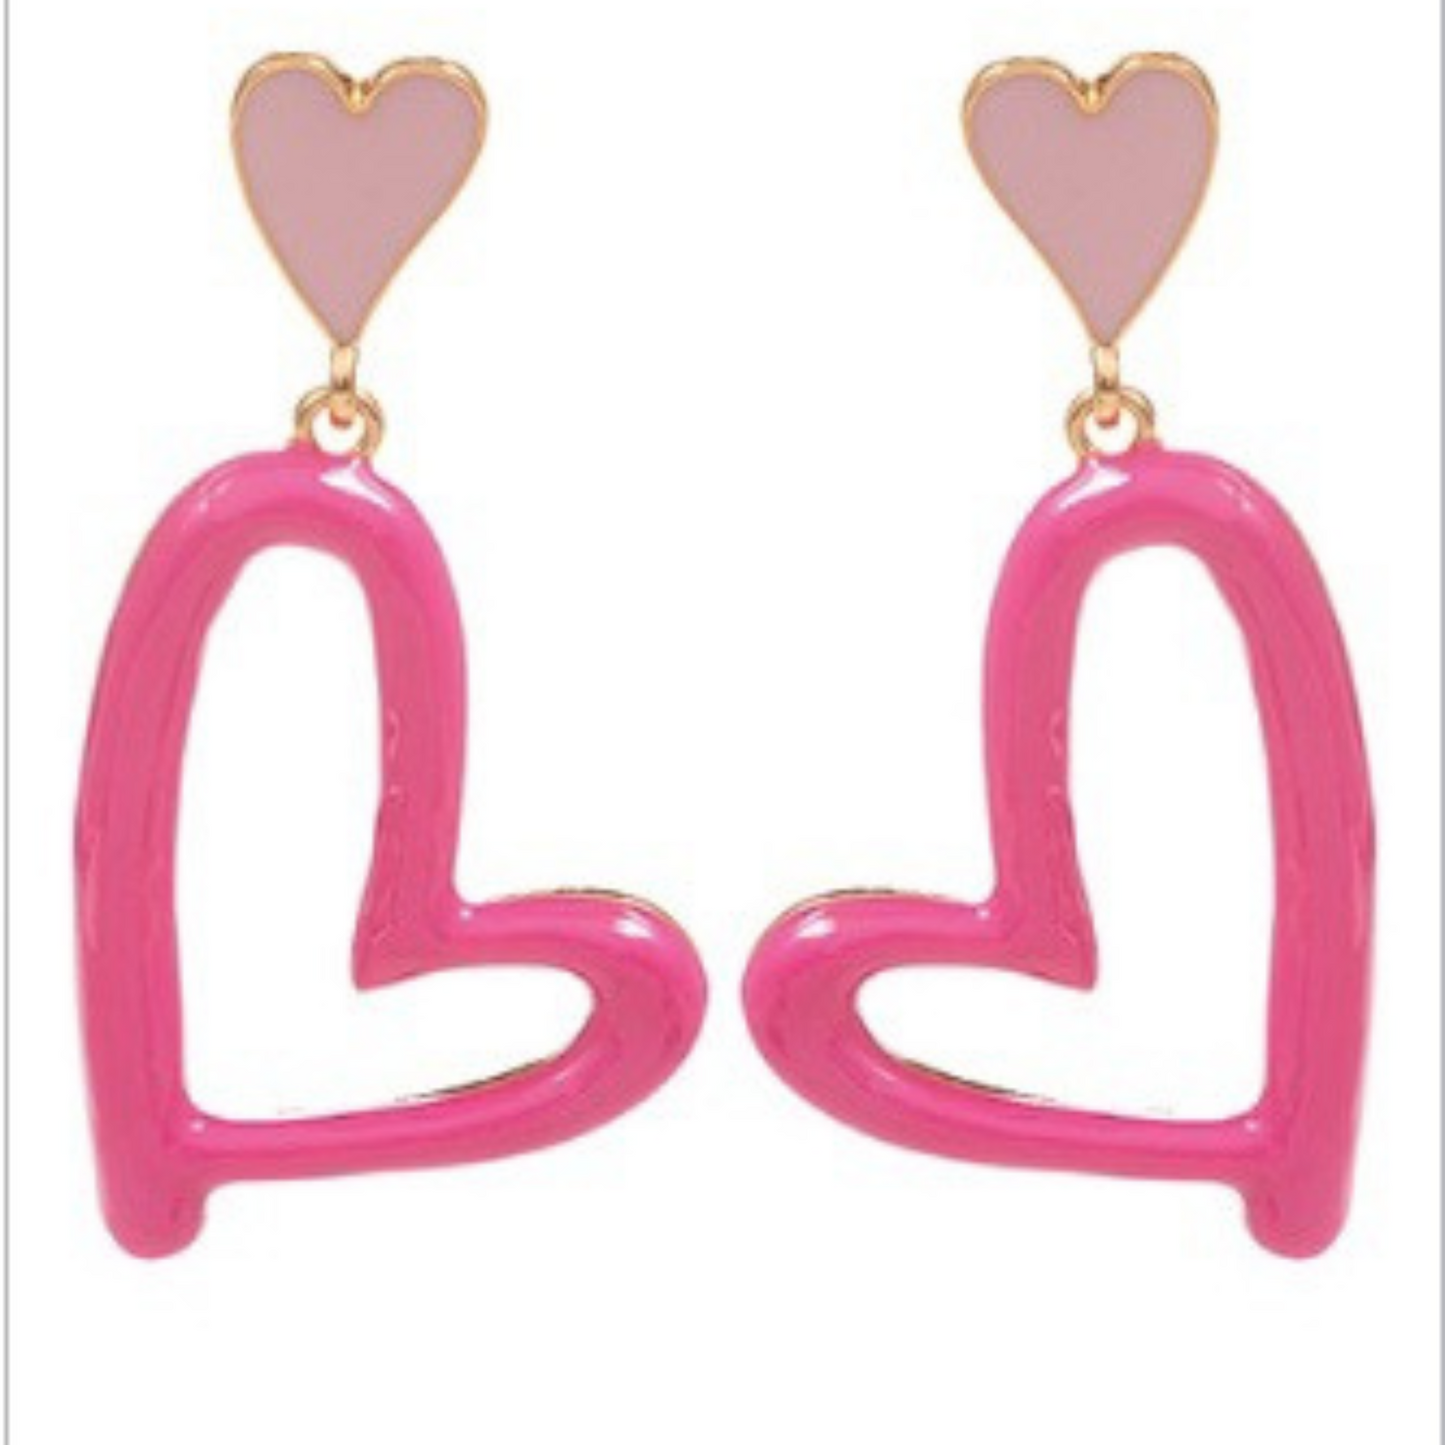 Double heart dangle earrings in pink